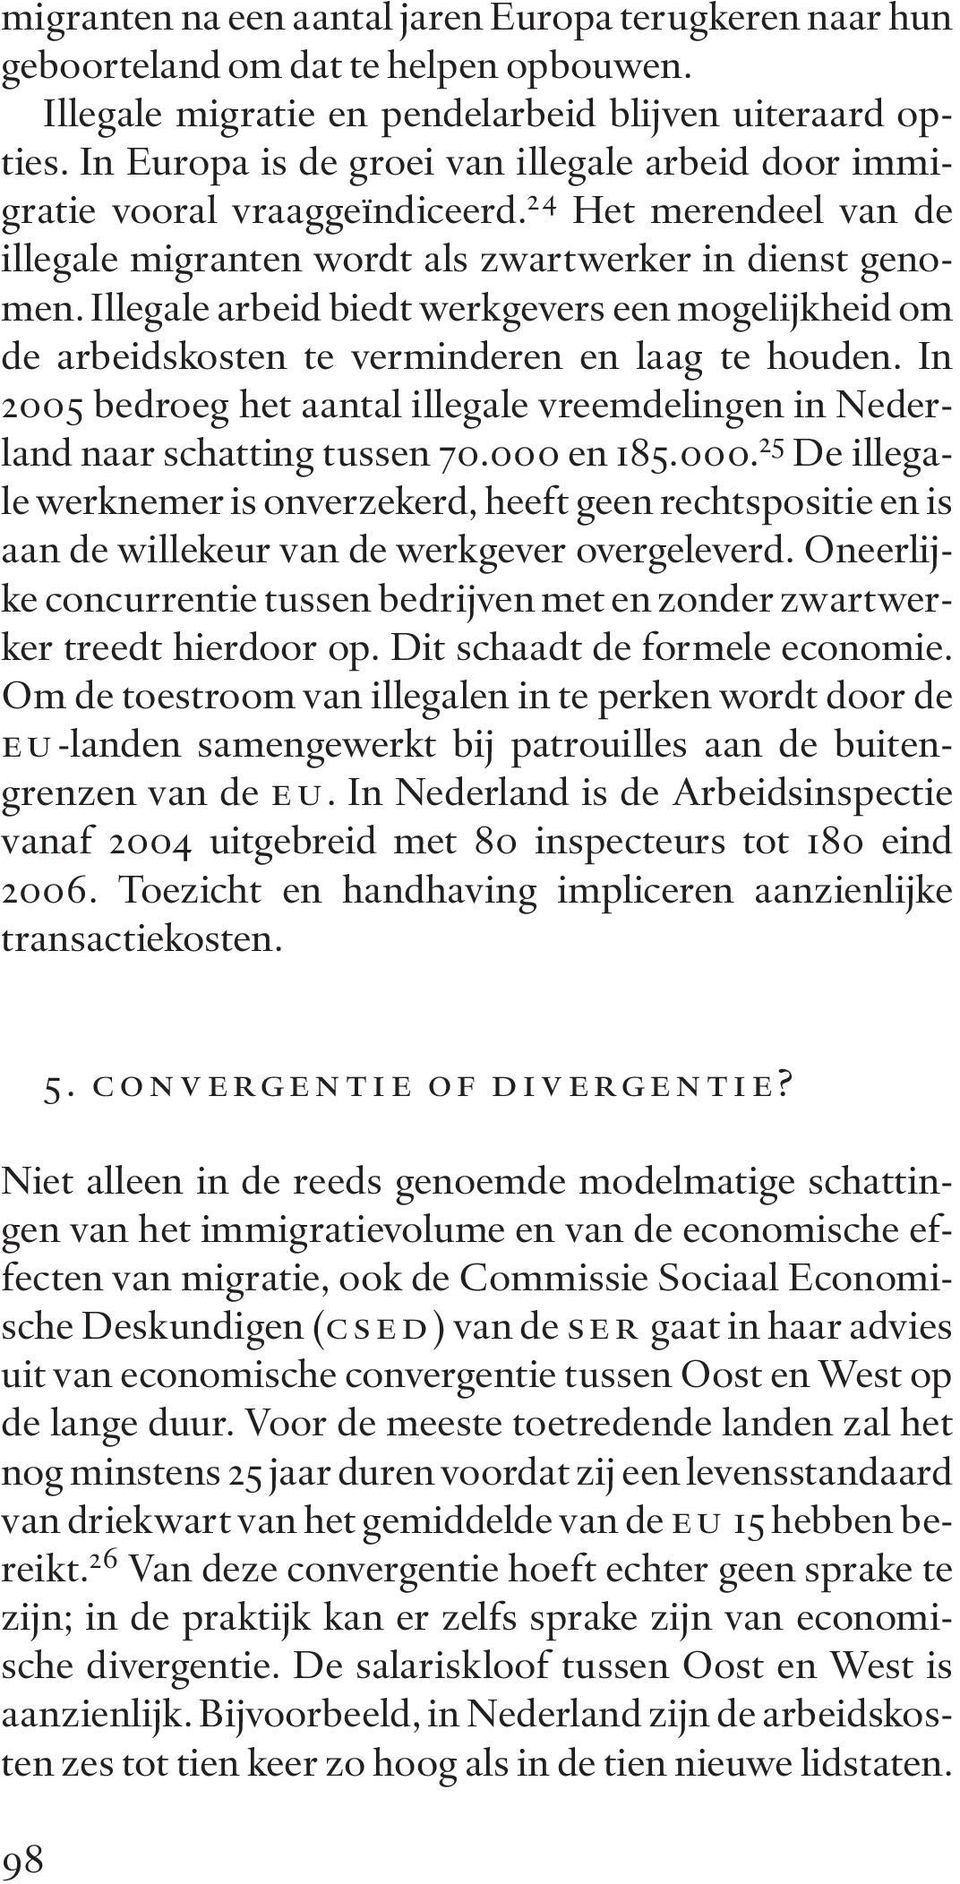 Illegale arbeid biedt werkgevers een mogelijkheid om de arbeidskosten te verminderen en laag te houden. In 2005 bedroeg het aantal illegale vreemdelingen in Nederland naar schatting tussen 70.